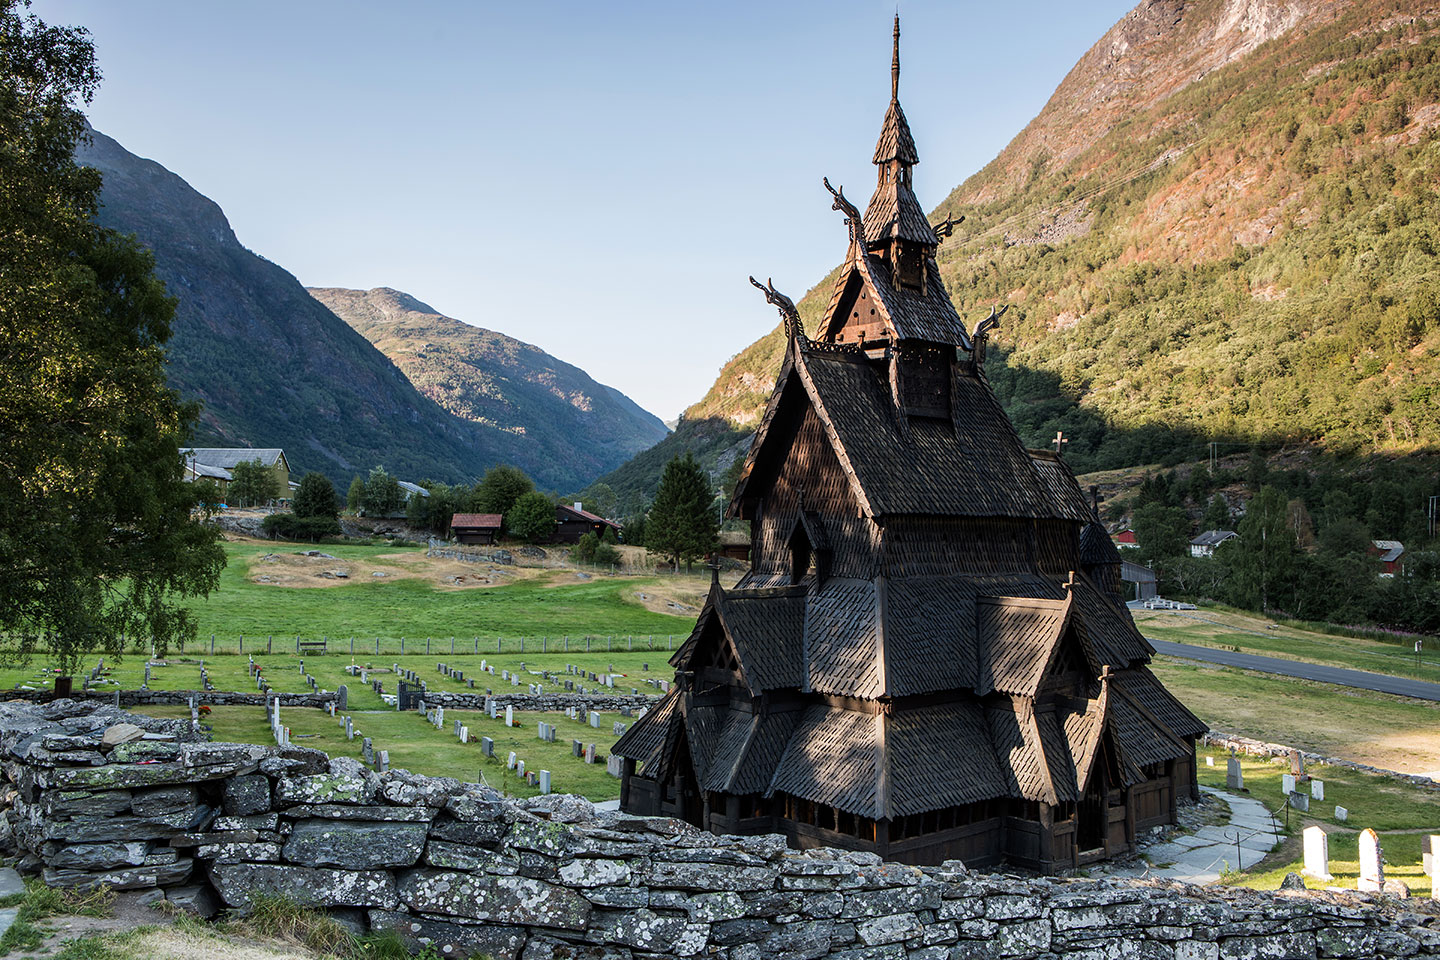 Borgund stave church in Norway